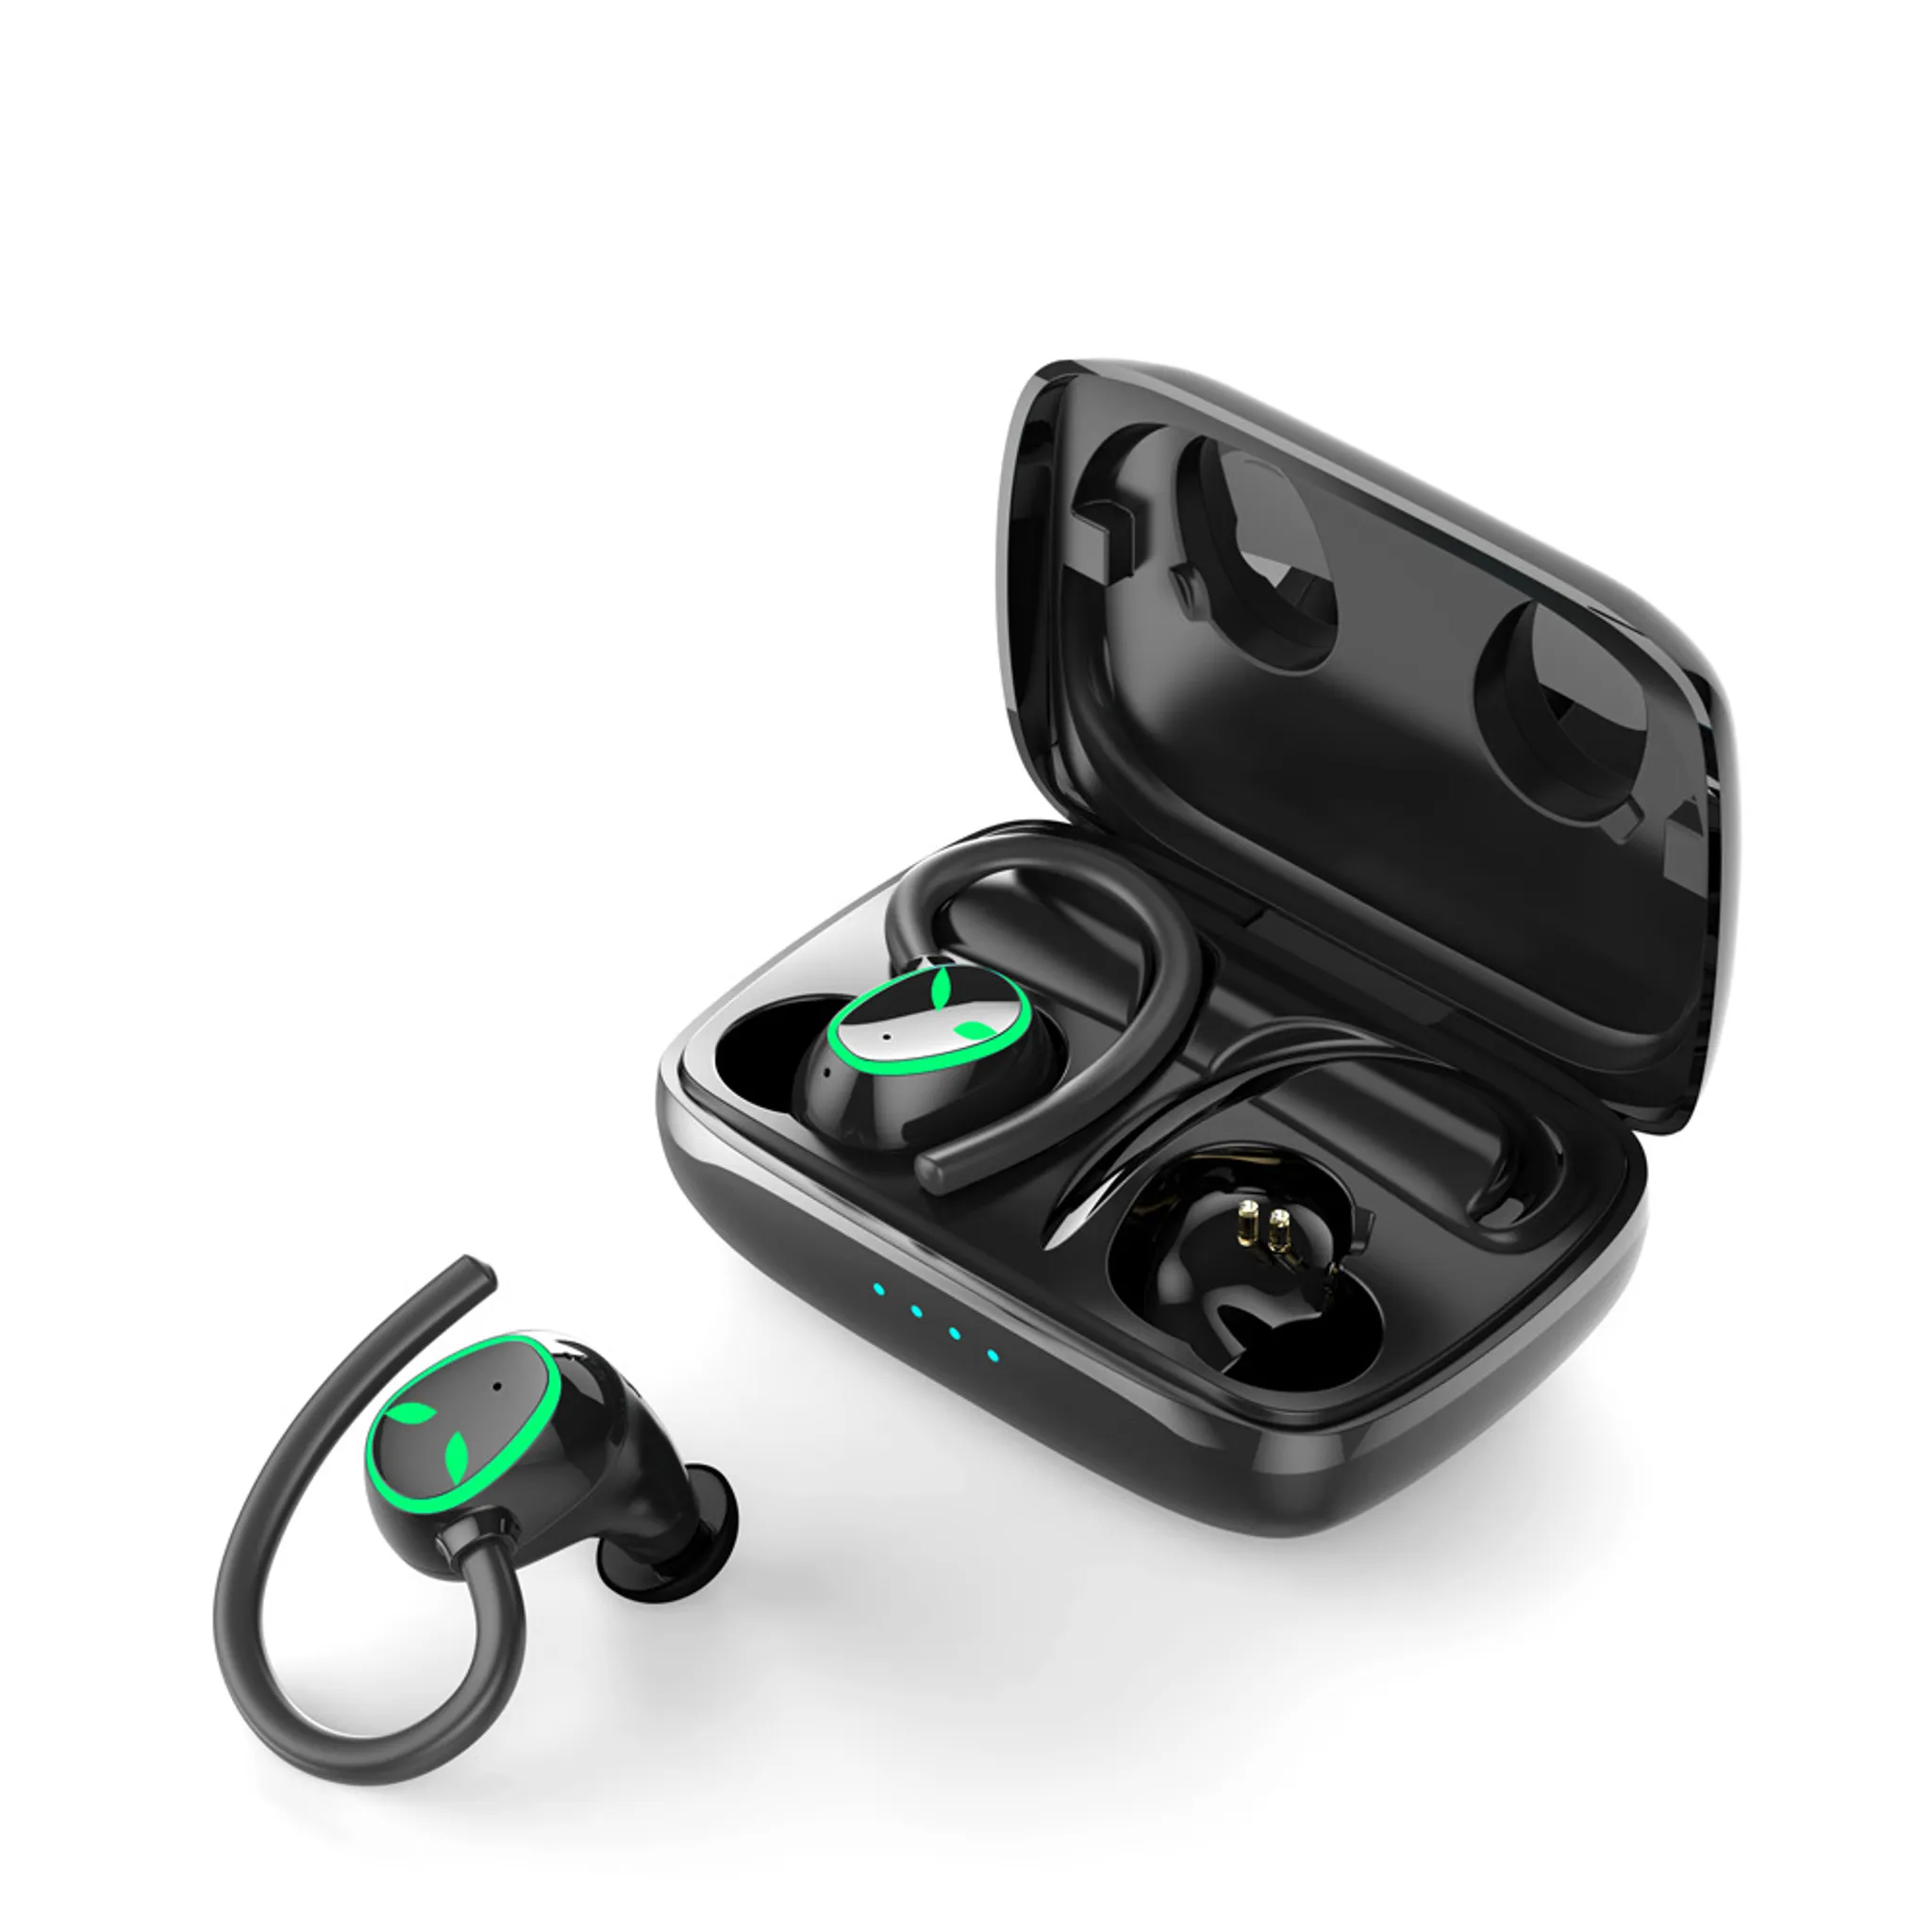 Knochenleitungskopfhörer Bluetooth 5.0 Ohrhörer Open Ear IPX5 Wasserdicht